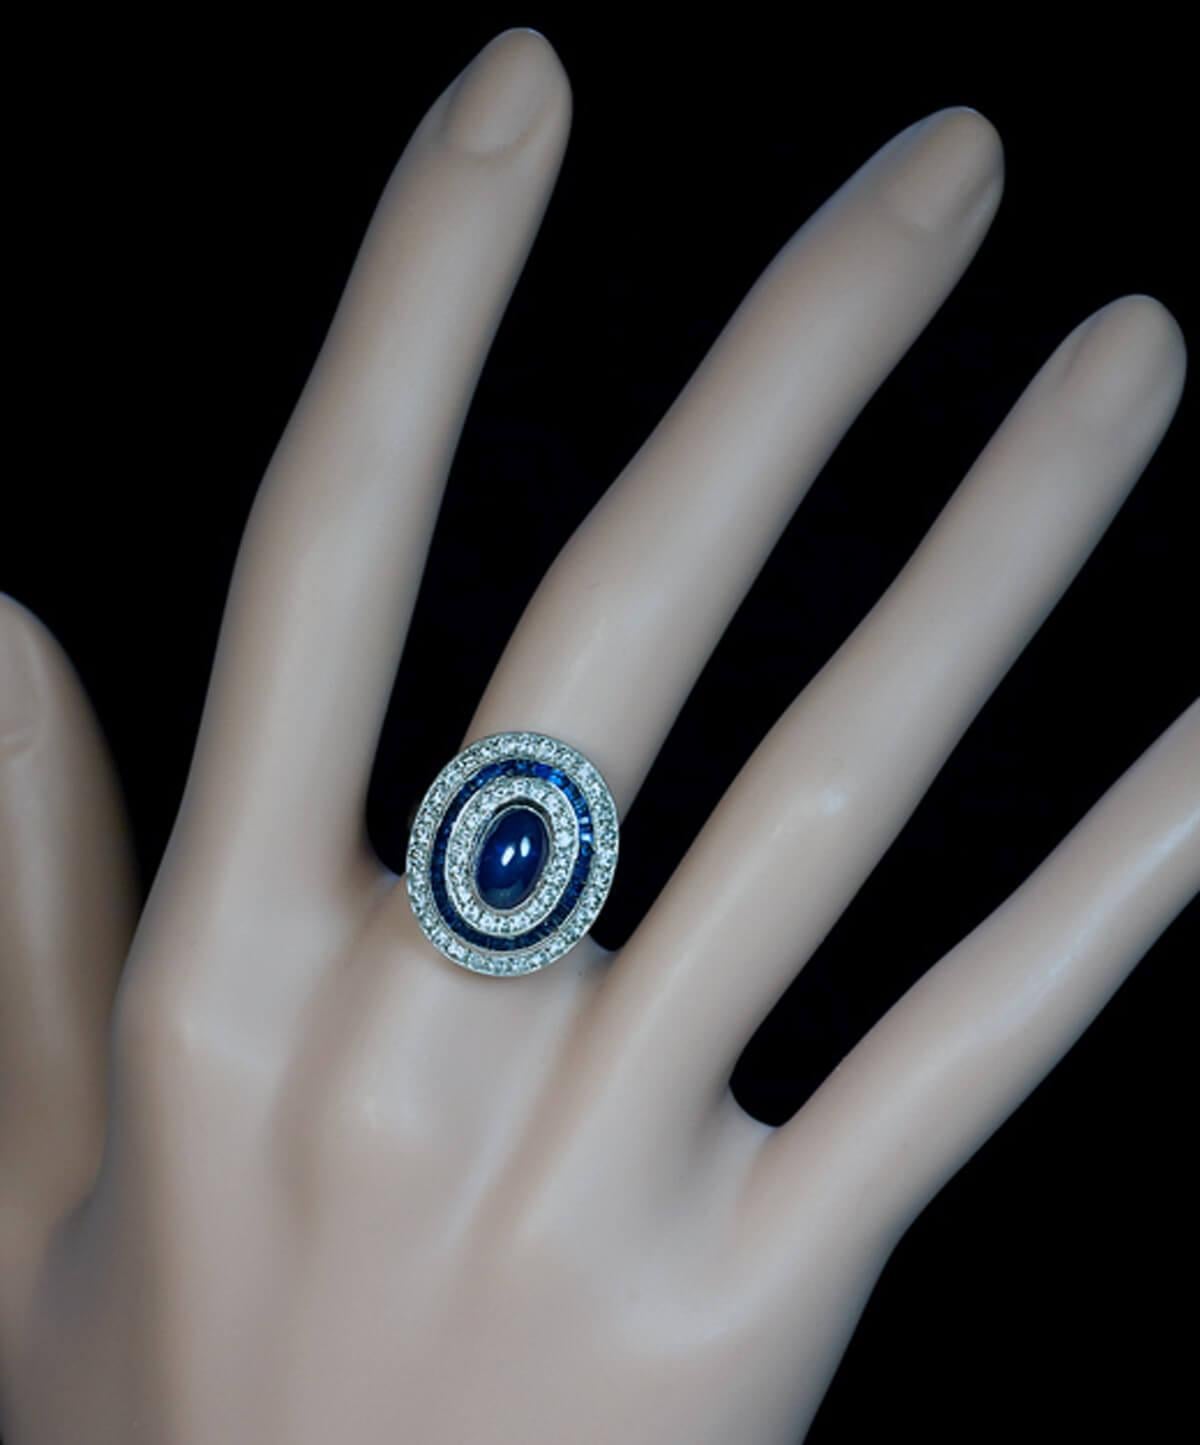 Belgien, 1940er Jahre  Der Ring ist aus 18 Karat Weißgold handgefertigt. In der Mitte befindet sich ein blauer Saphir im Cabochon-Schliff, der von zwei Reihen Diamanten (ca. 1 Karat Gesamtgewicht) und einer Reihe von Saphiren im französischen